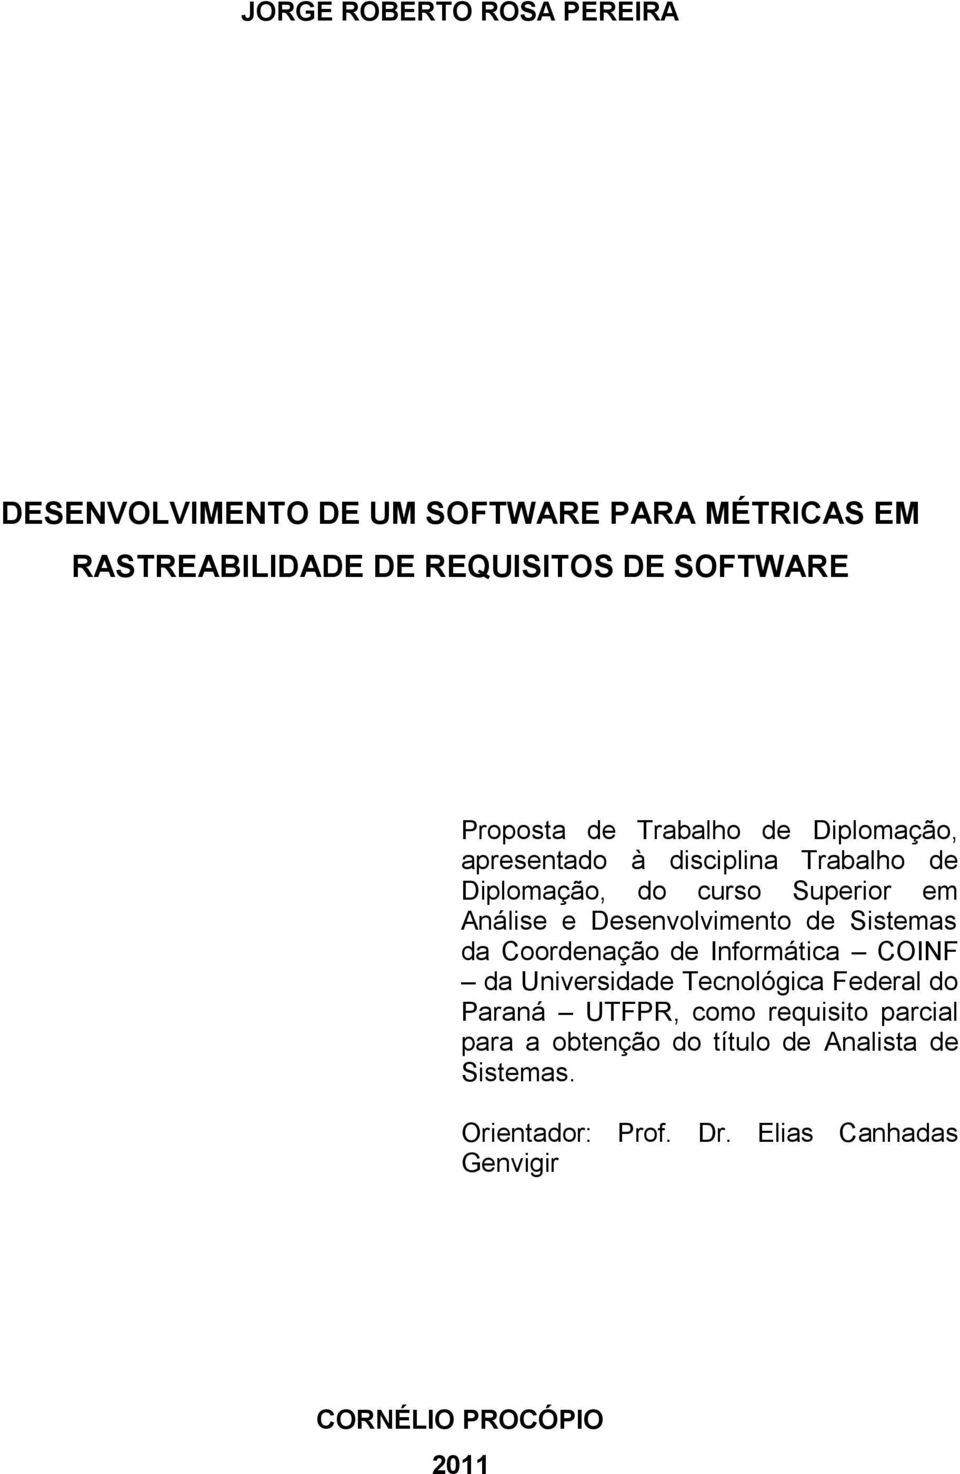 Desenvolvimento de Sistemas da Coordenação de Informática COINF da Universidade Tecnológica Federal do Paraná UTFPR, como